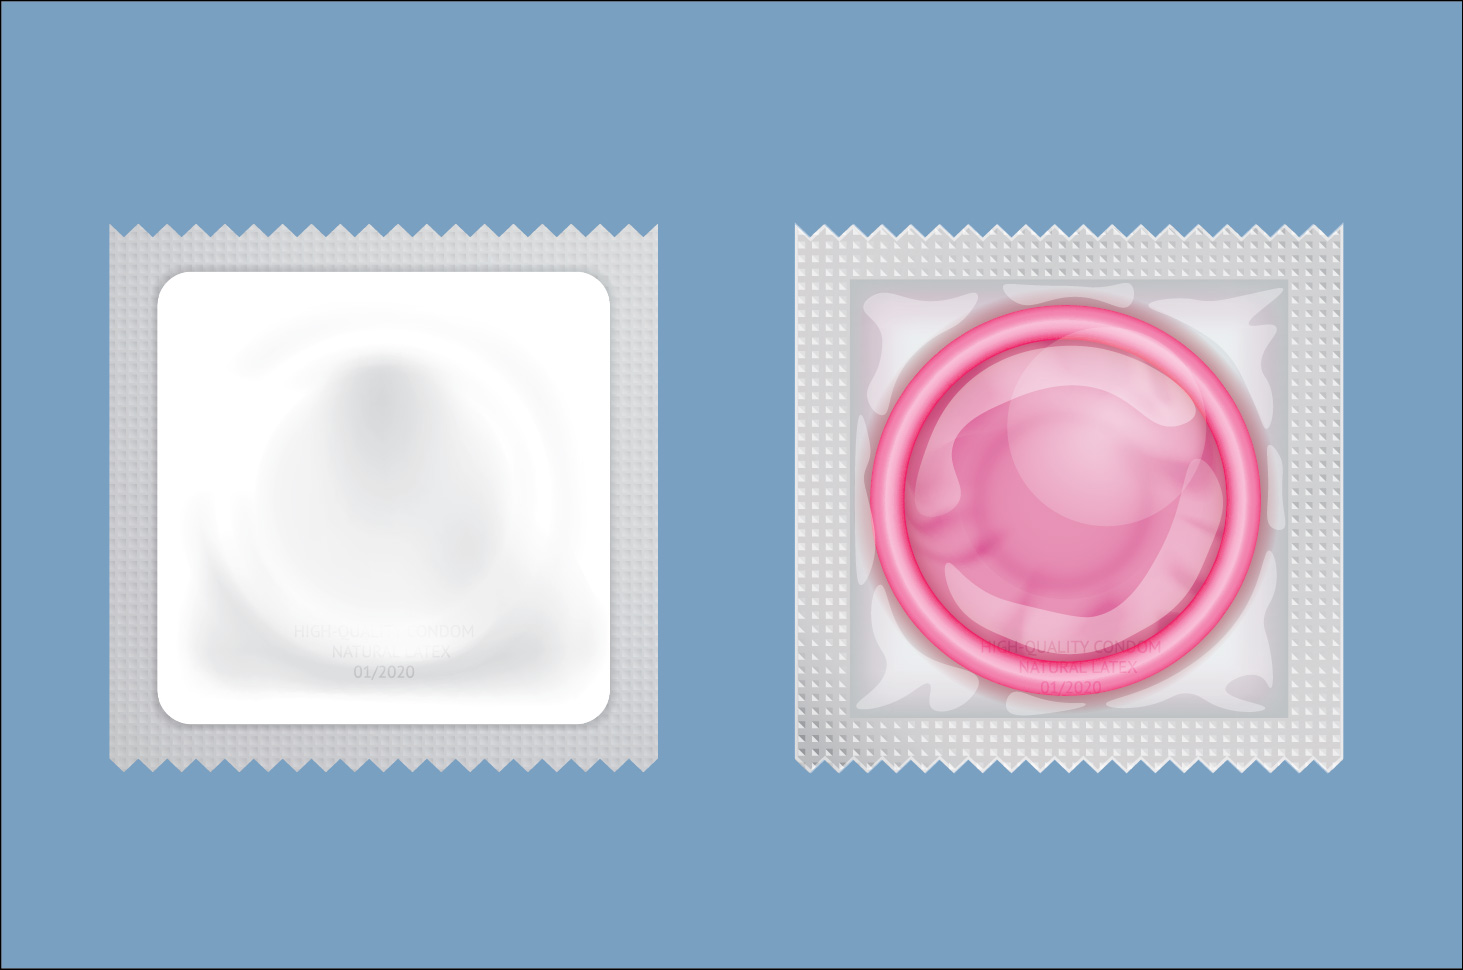 콘돔이 성병 예방에 효과적입니까?